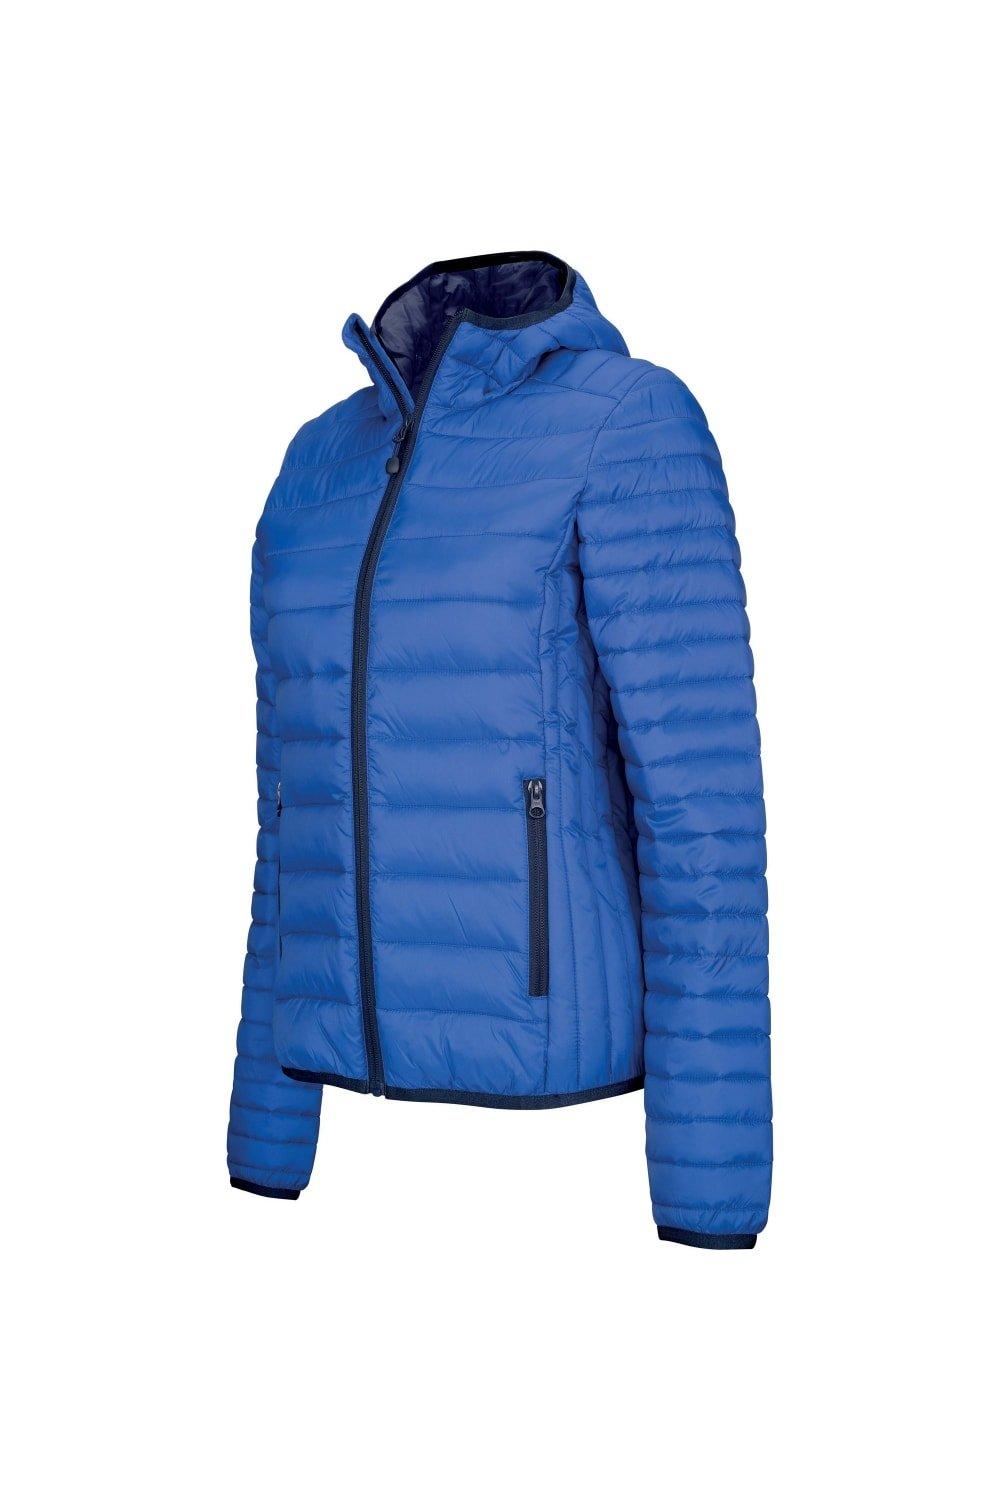 Легкая стеганая куртка с капюшоном Kariban, синий куртка стеганая легкая с капюшоном и цветочным принтом 7 лет 120 см синий